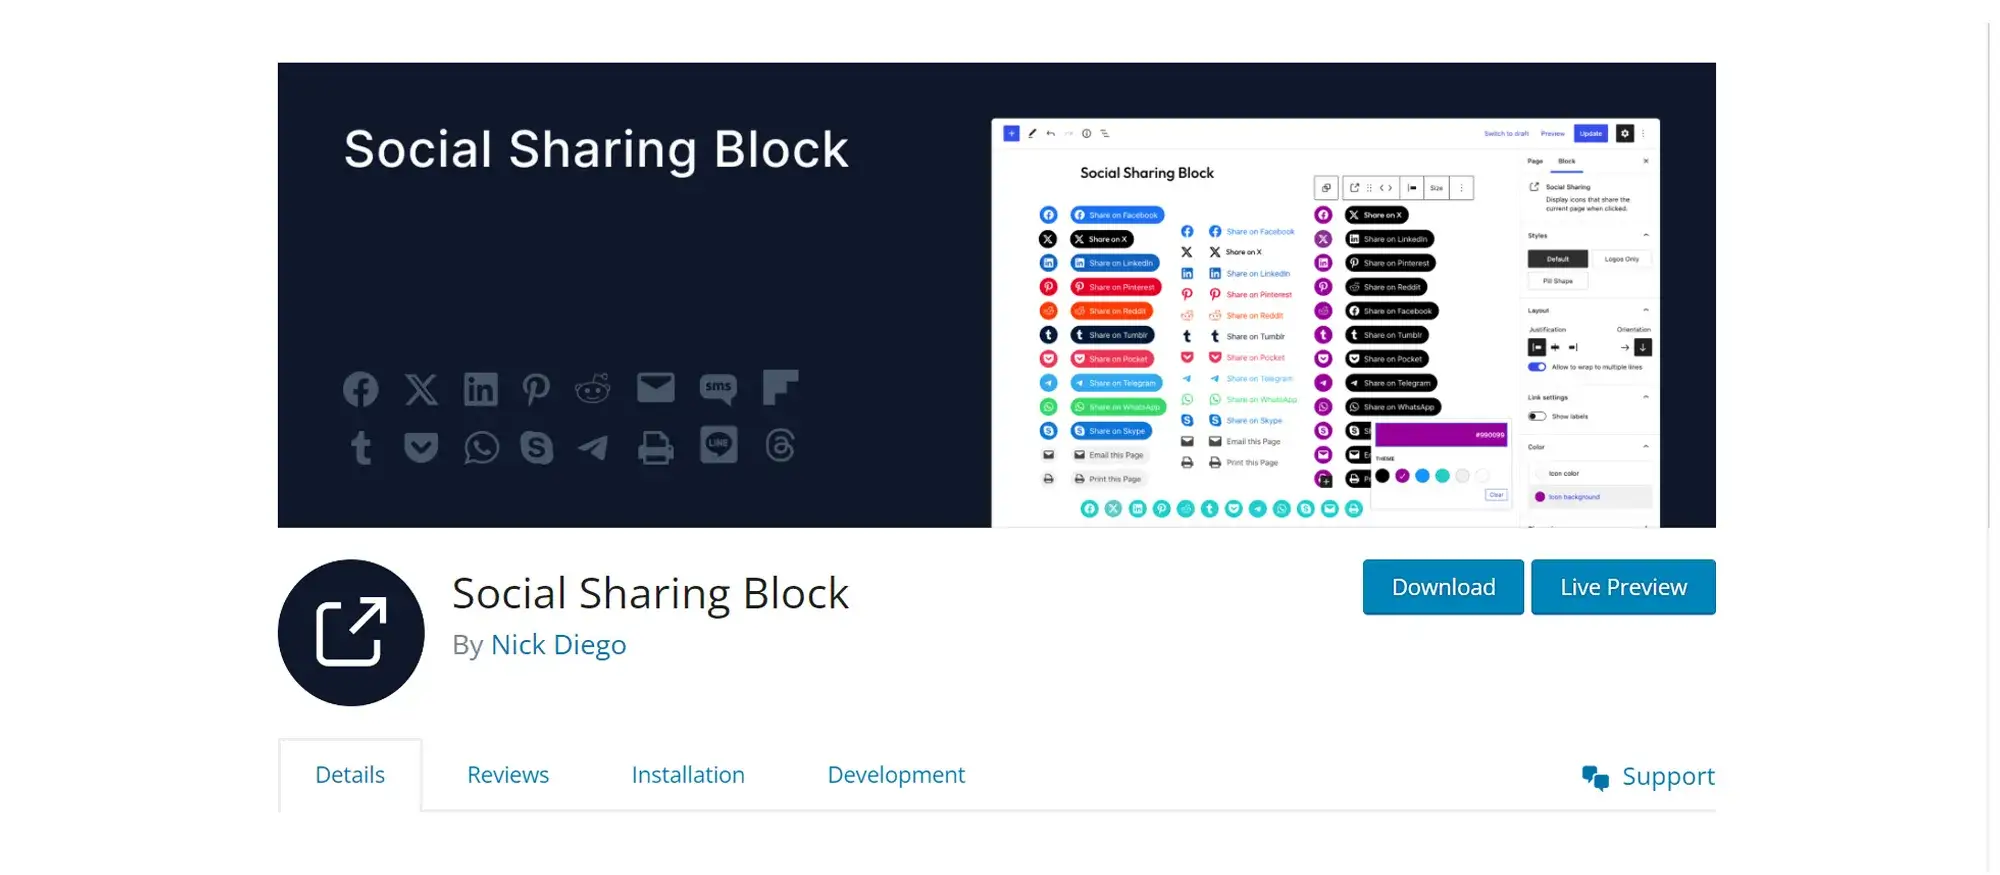 Social Sharing Block